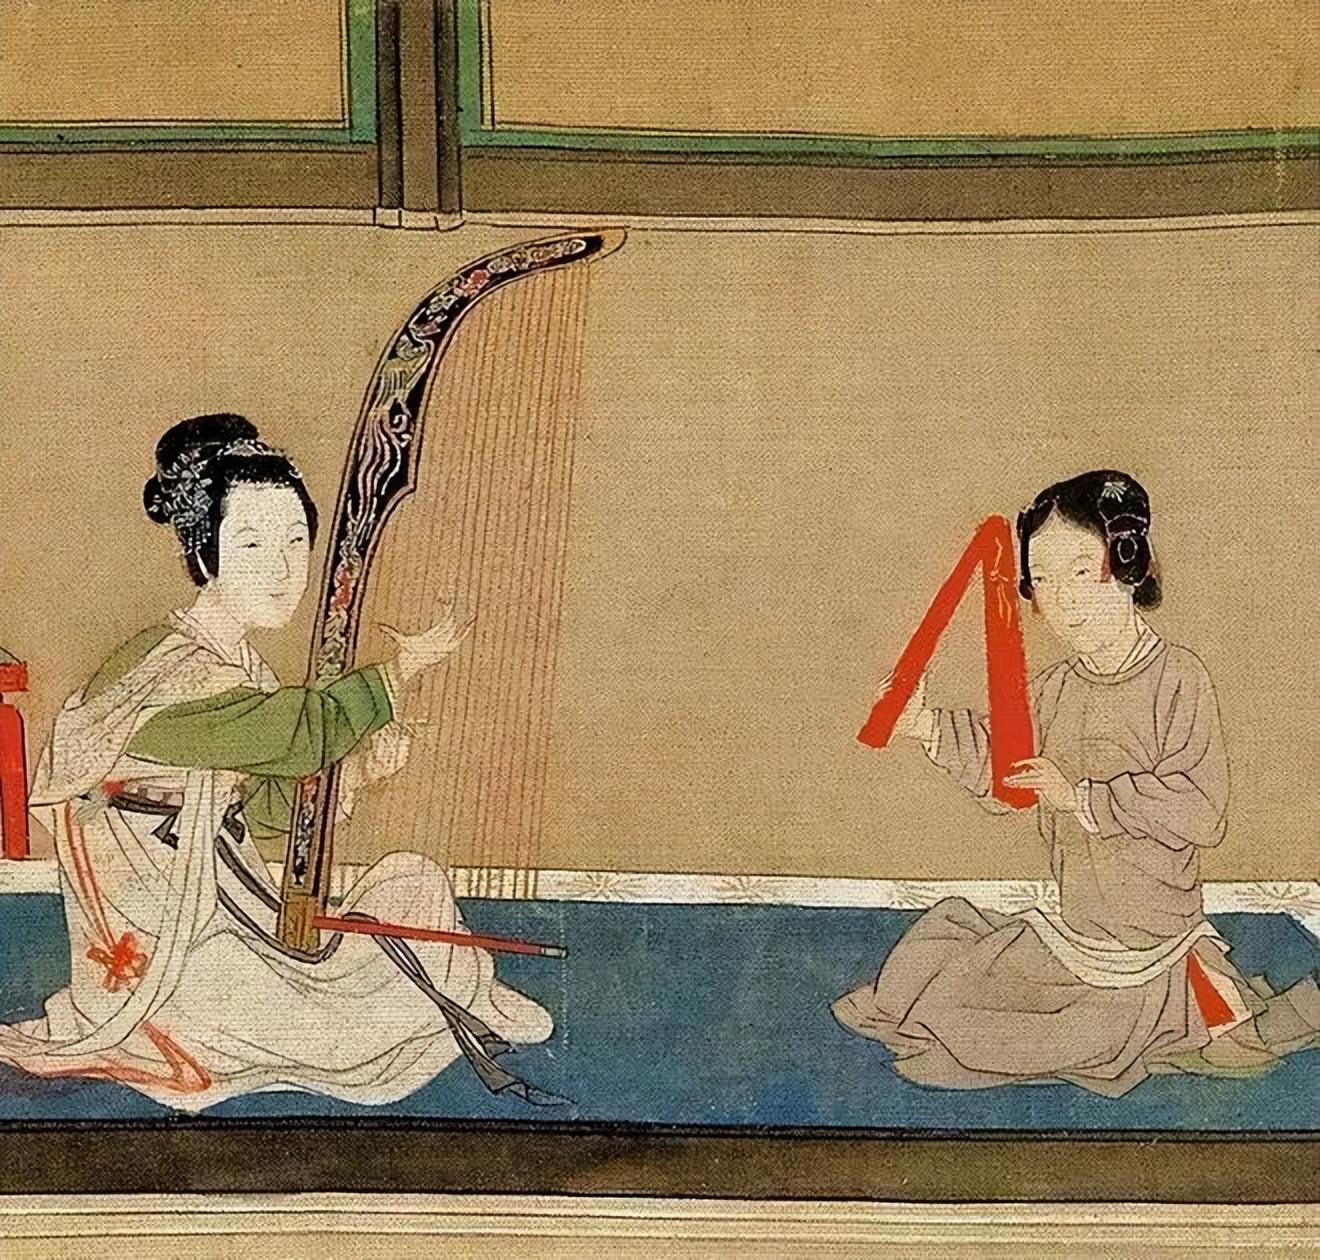 隋唐时期的音乐隐喻经历与两面性特点发展经历的波折与递进